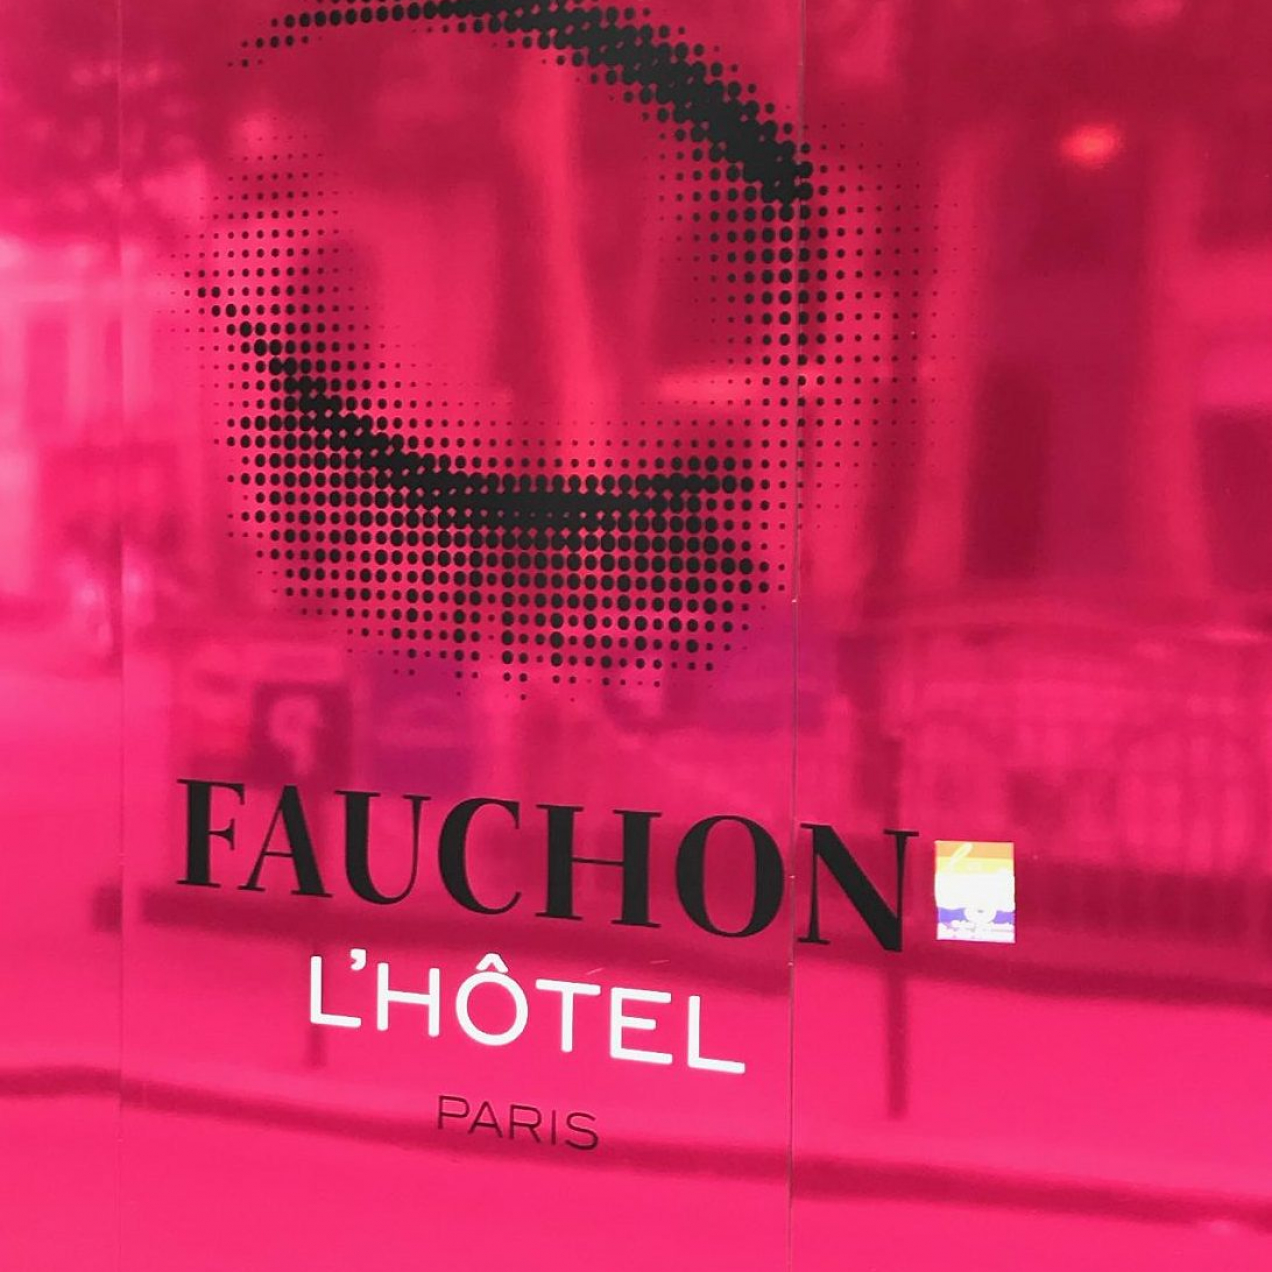 Le premier hôtel Fauchon ouvrira ses portes début 2018